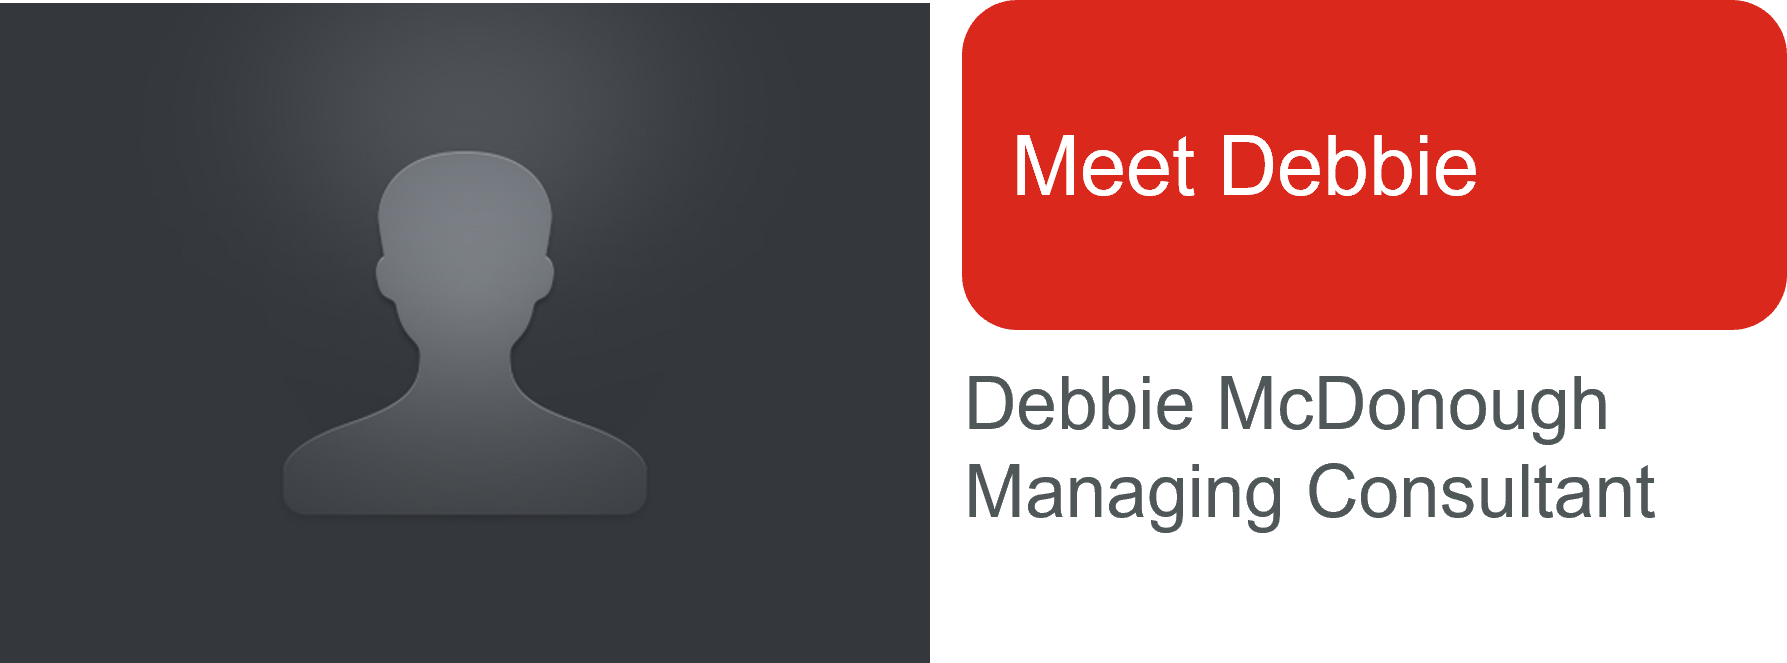 meet_Debbie.png